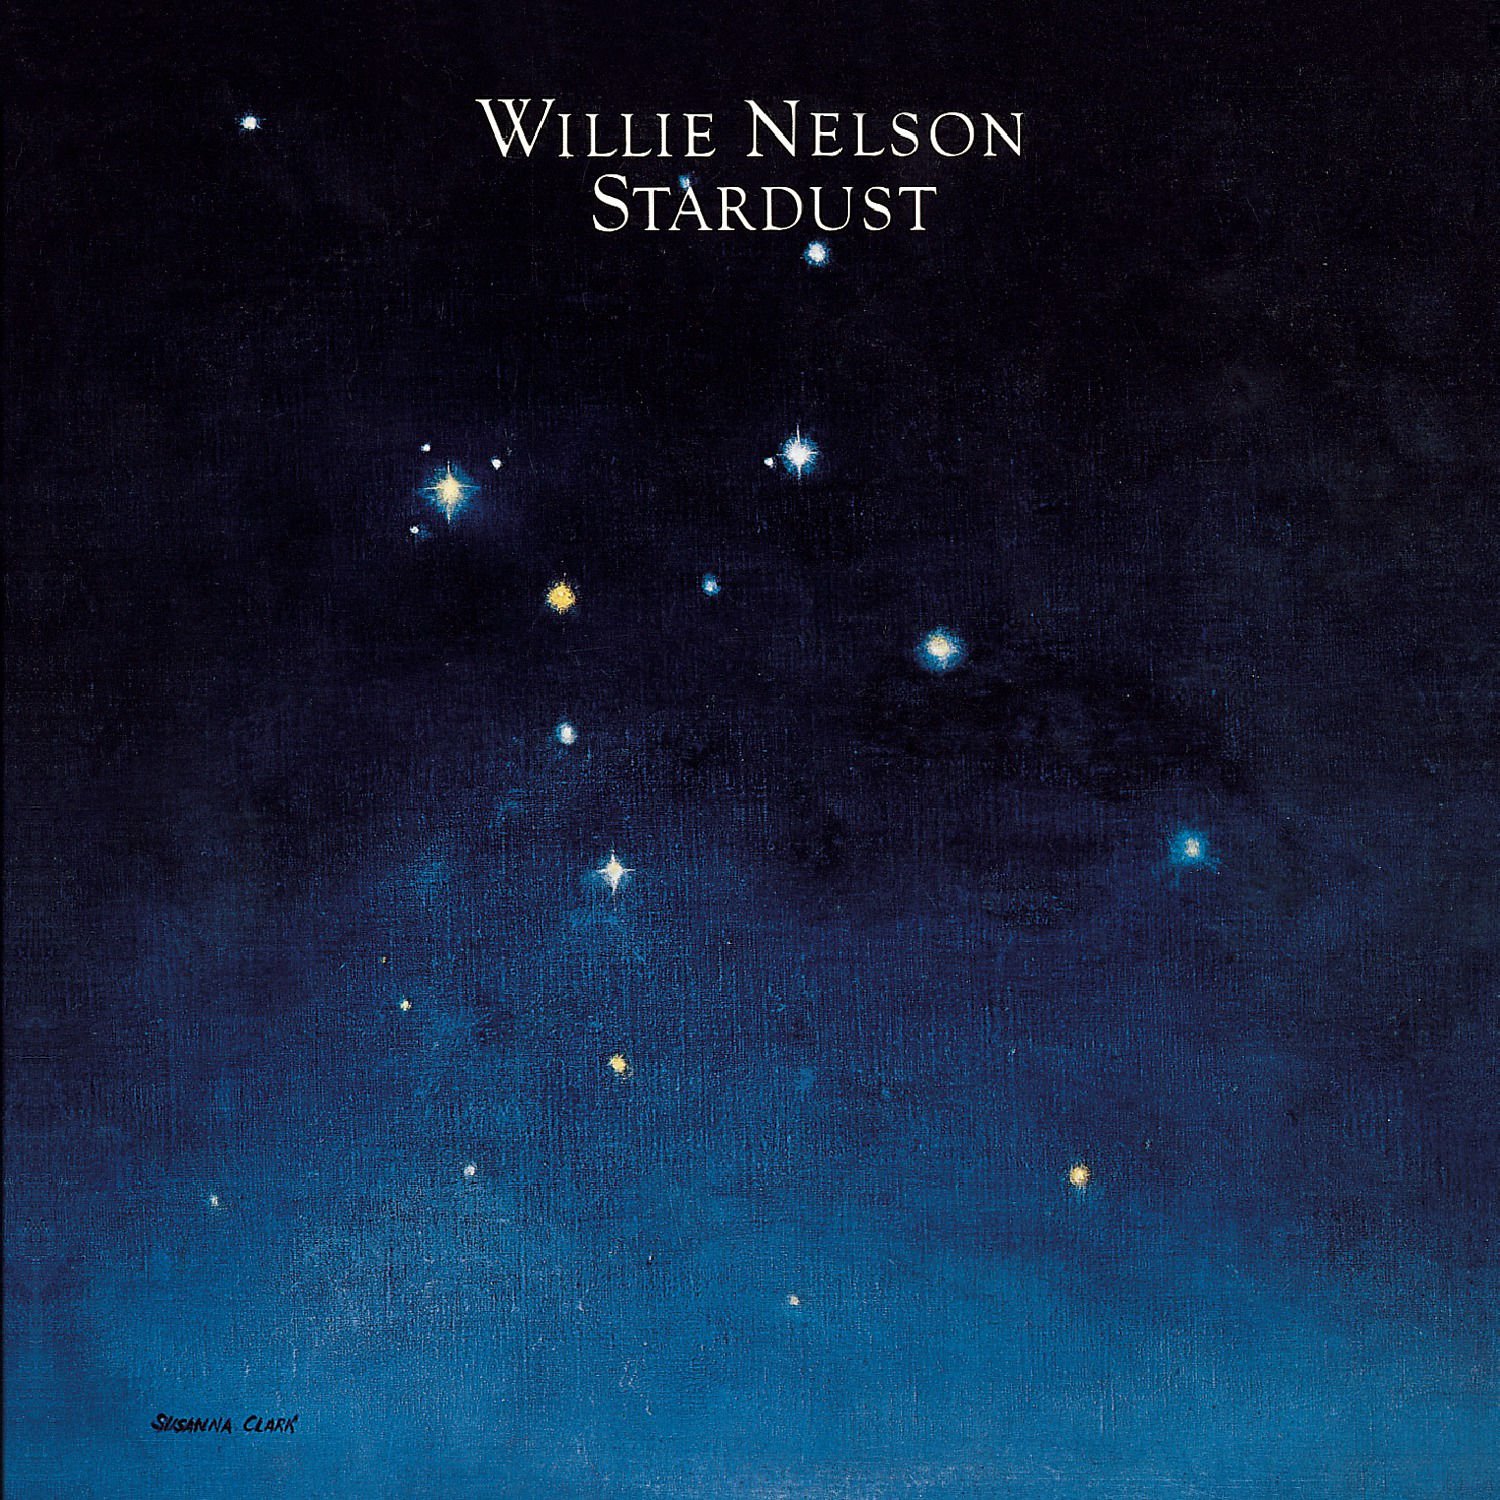 Willie Nelson-Stardust-24-88-WEB-FLAC-REMASTERED-2012-OBZEN Download